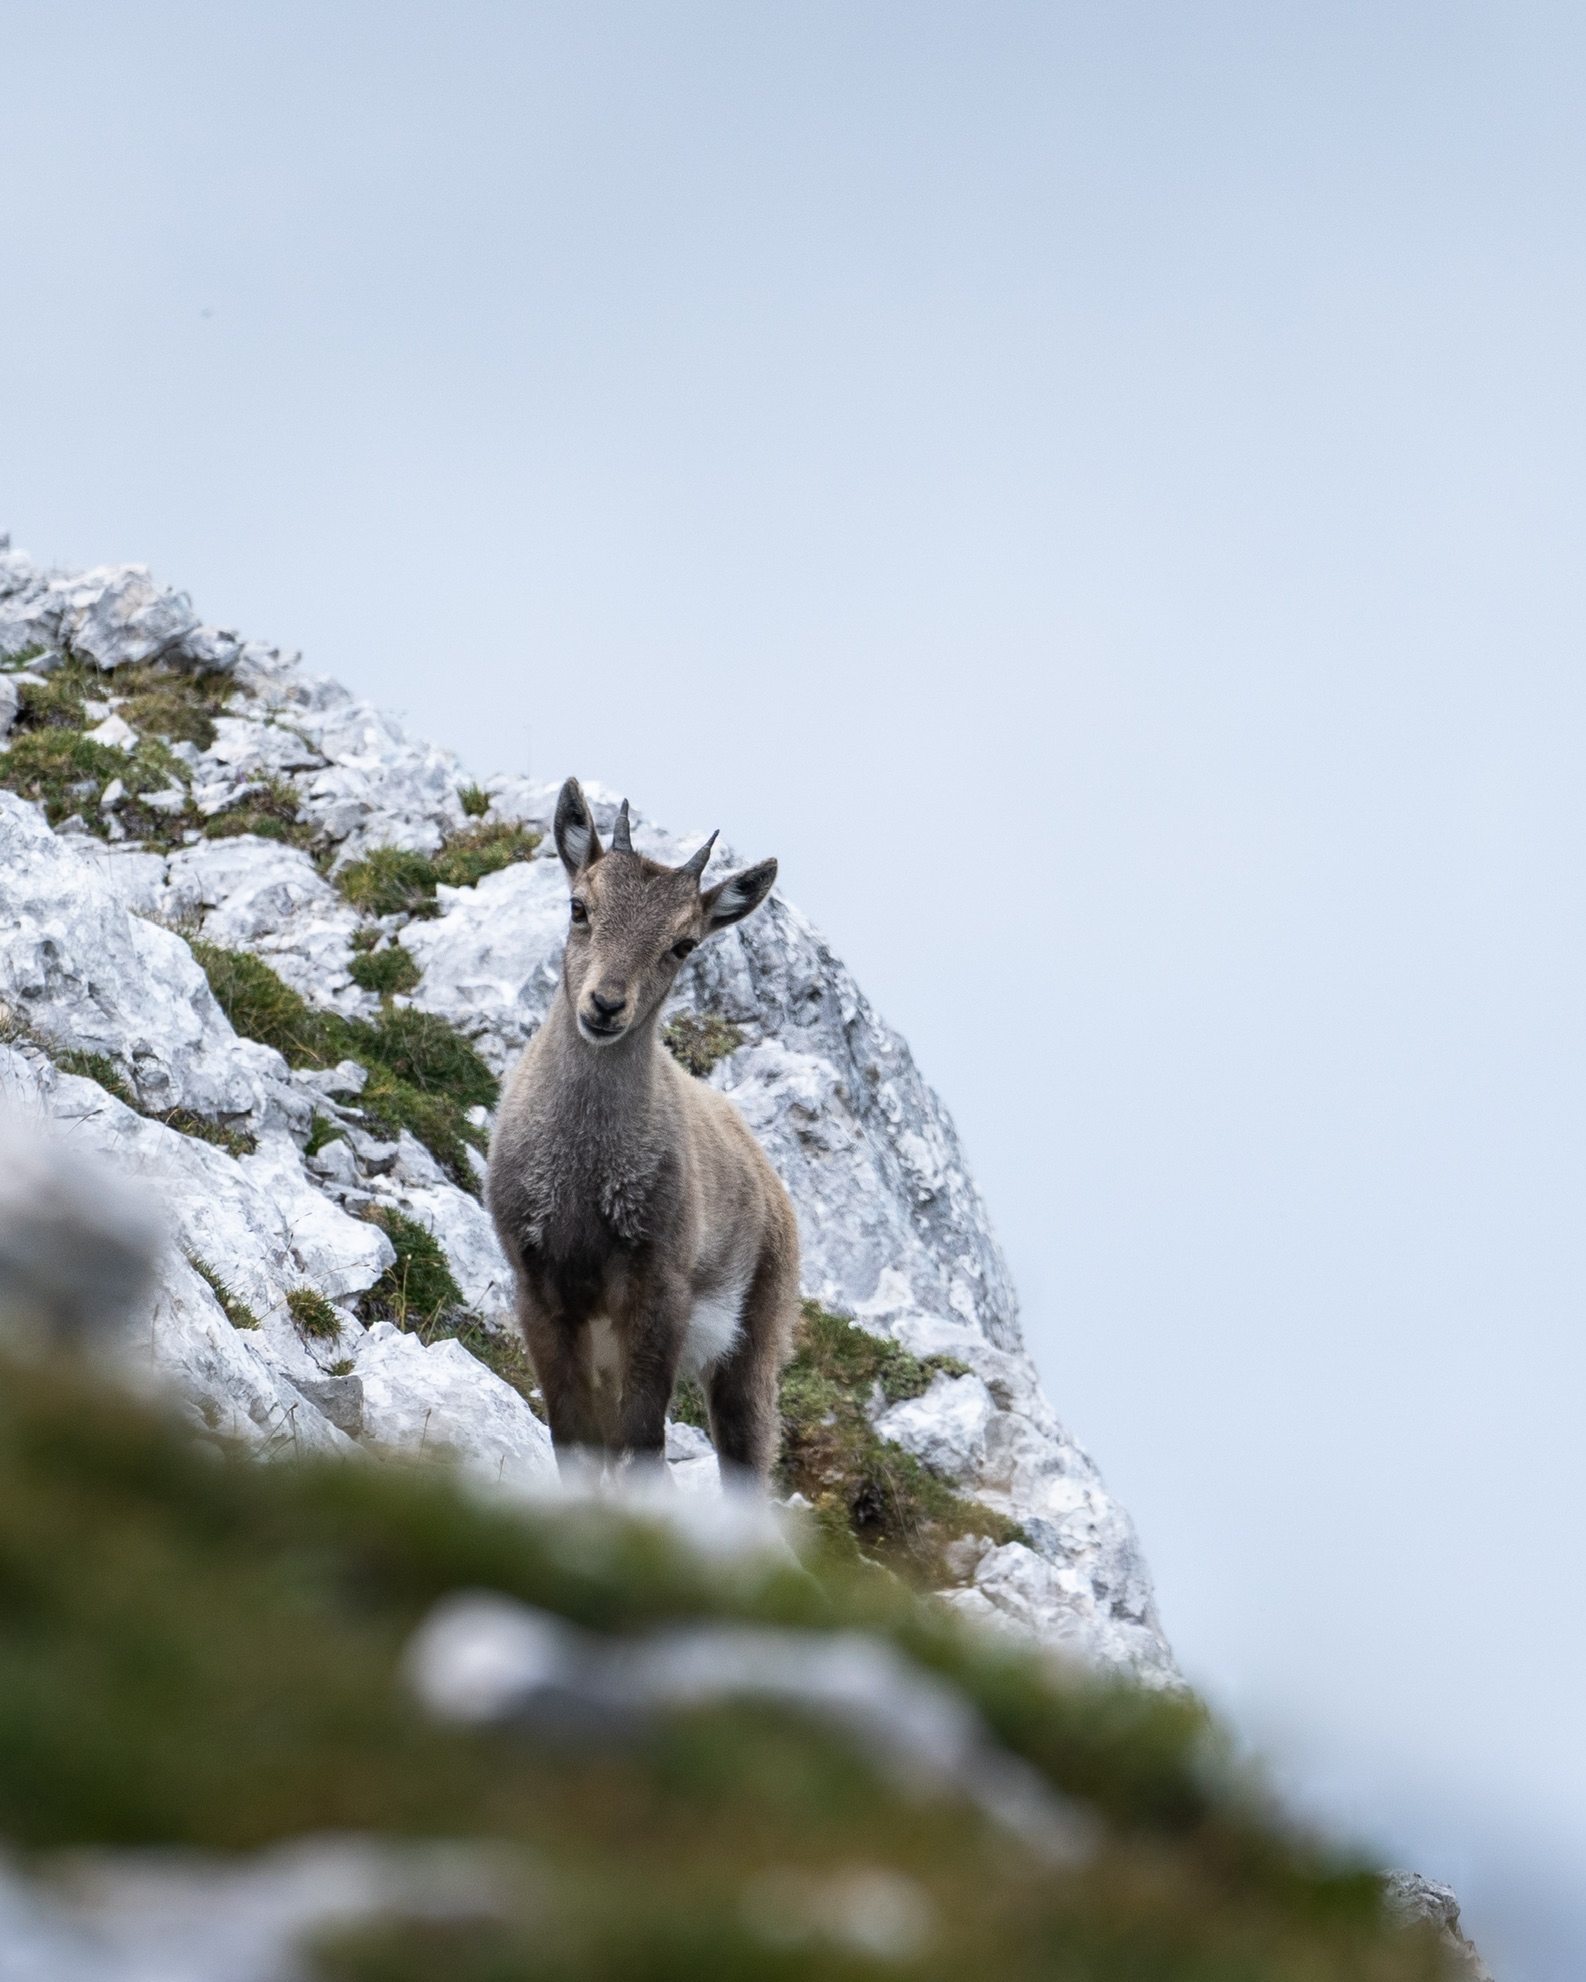 A goat on an Italian mountainside